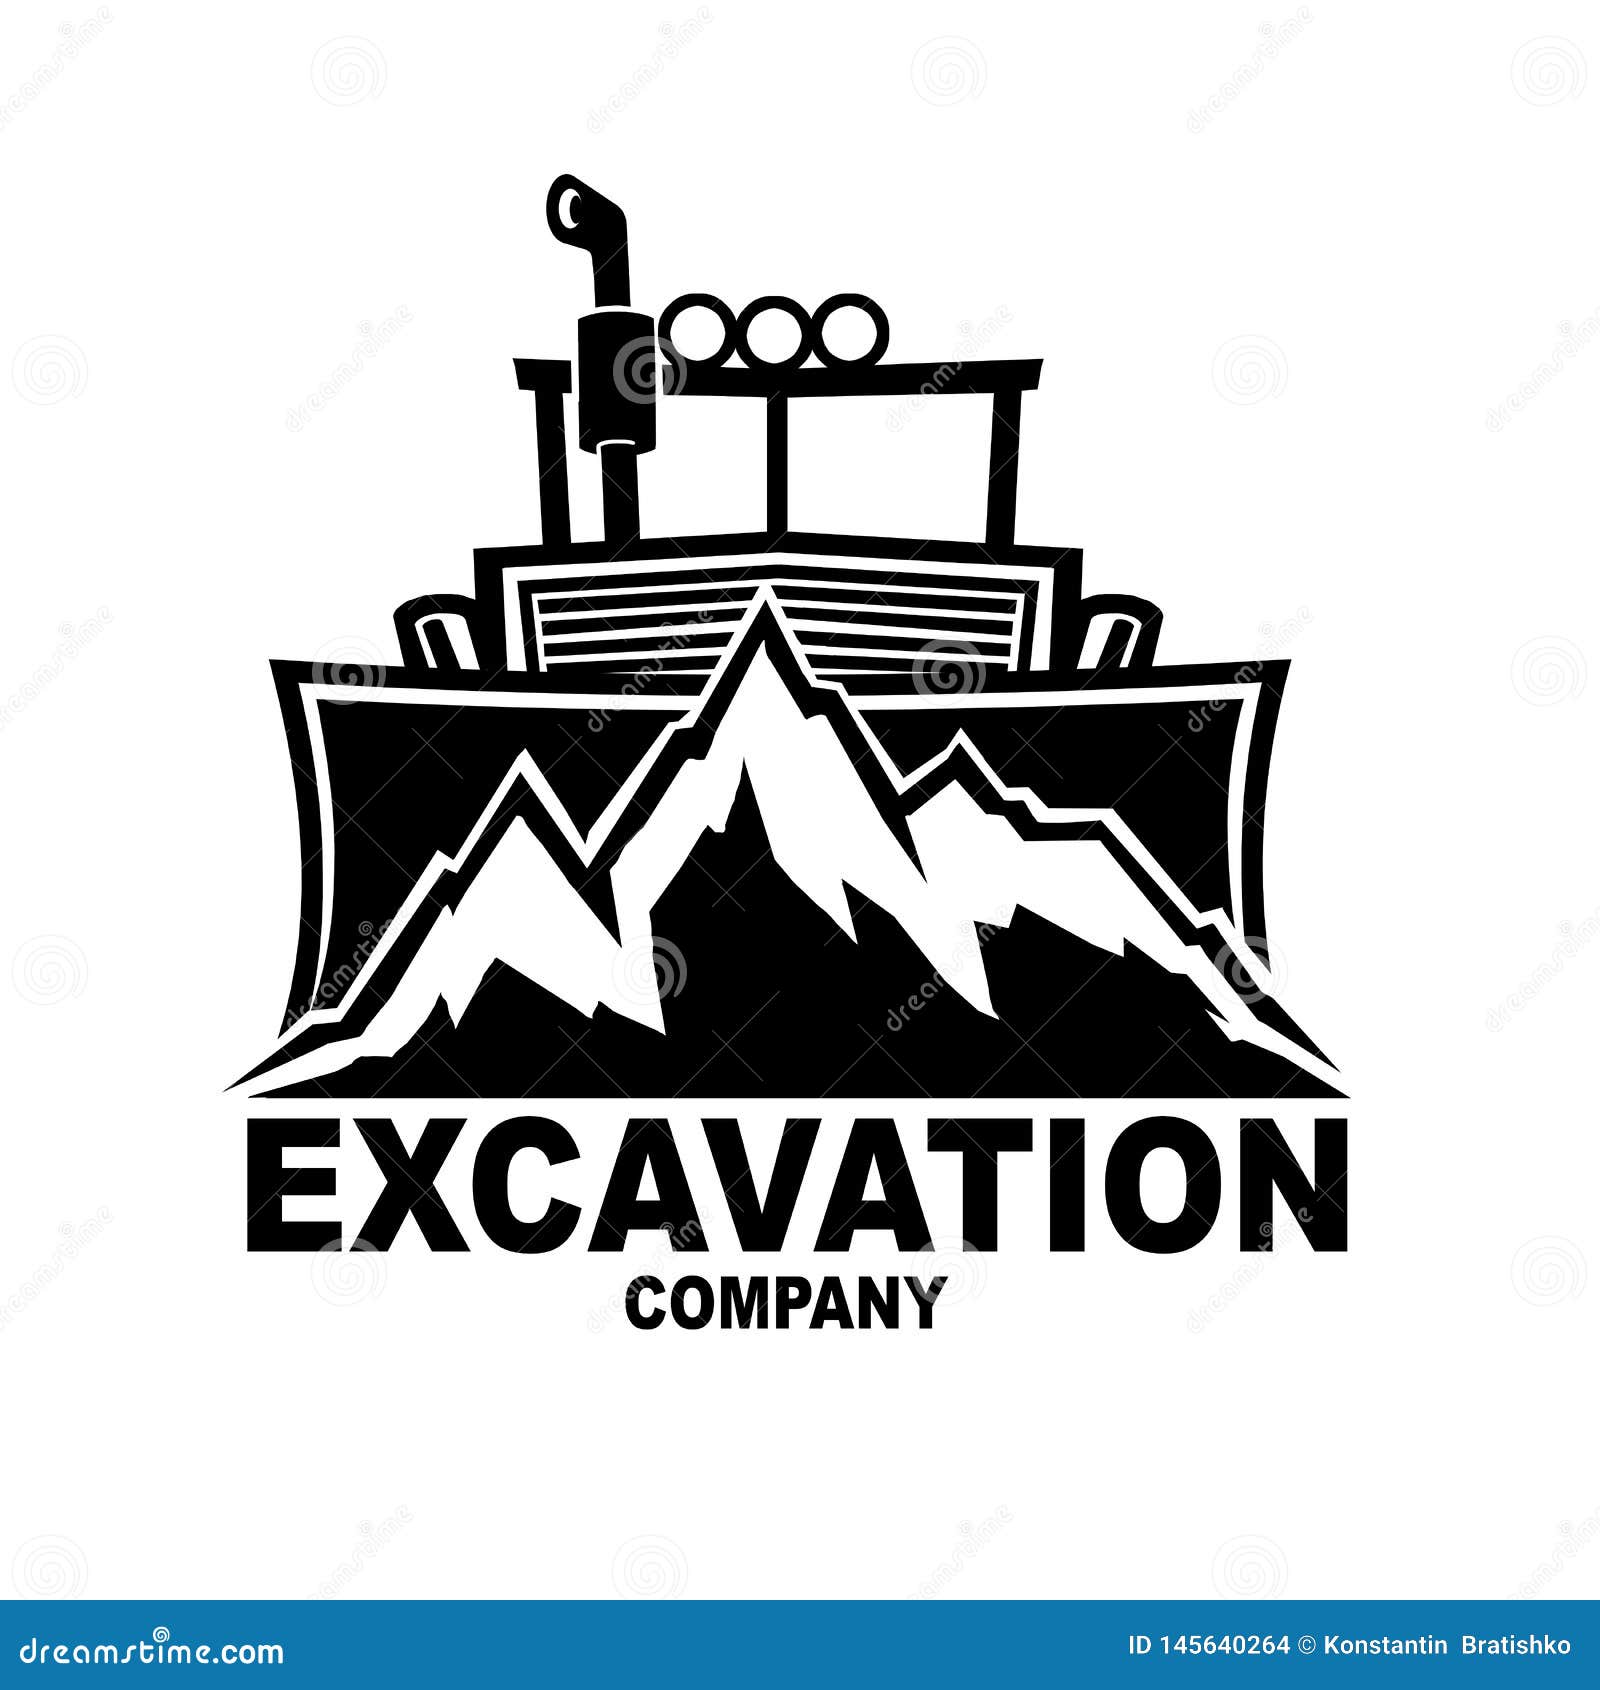 excavation company logo